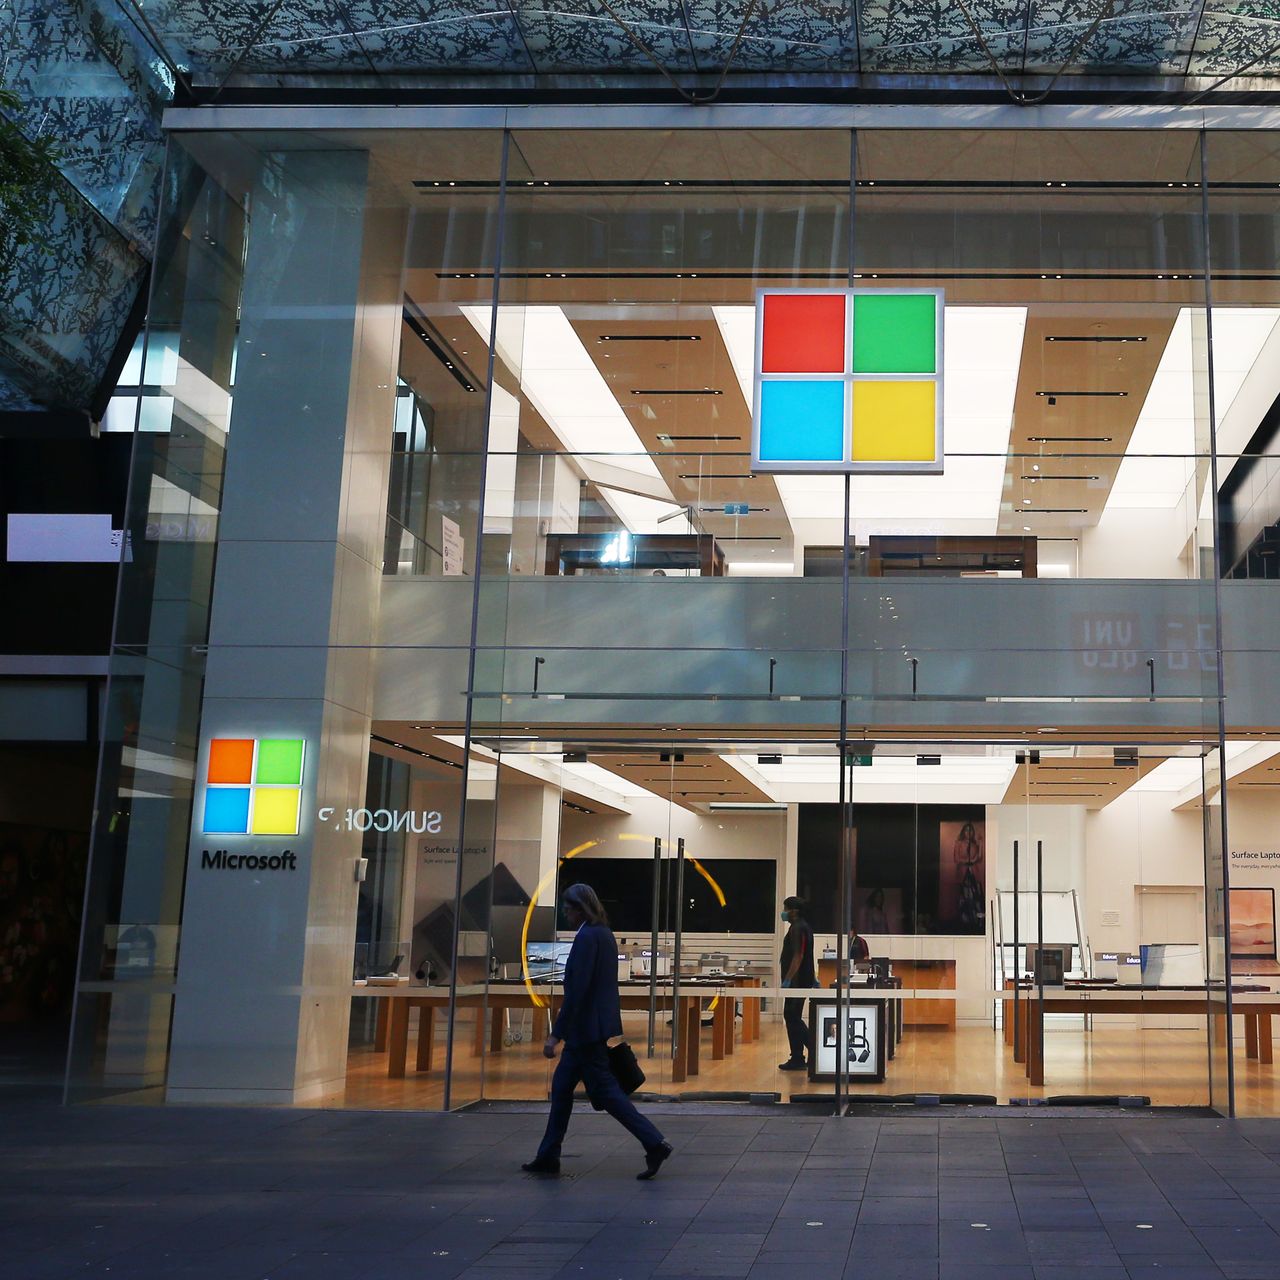 Microsoft Corp. sẽ làm chậm việc tuyển dụng trong các bộ phận Windows và Office cũng như các nhóm phần mềm trò chuyện và hội nghị Teams, phó chủ tịch điều hành các sản phẩm đó cho biết trong một email gửi nhân viên các bộ phận. Ảnh: @AFP.